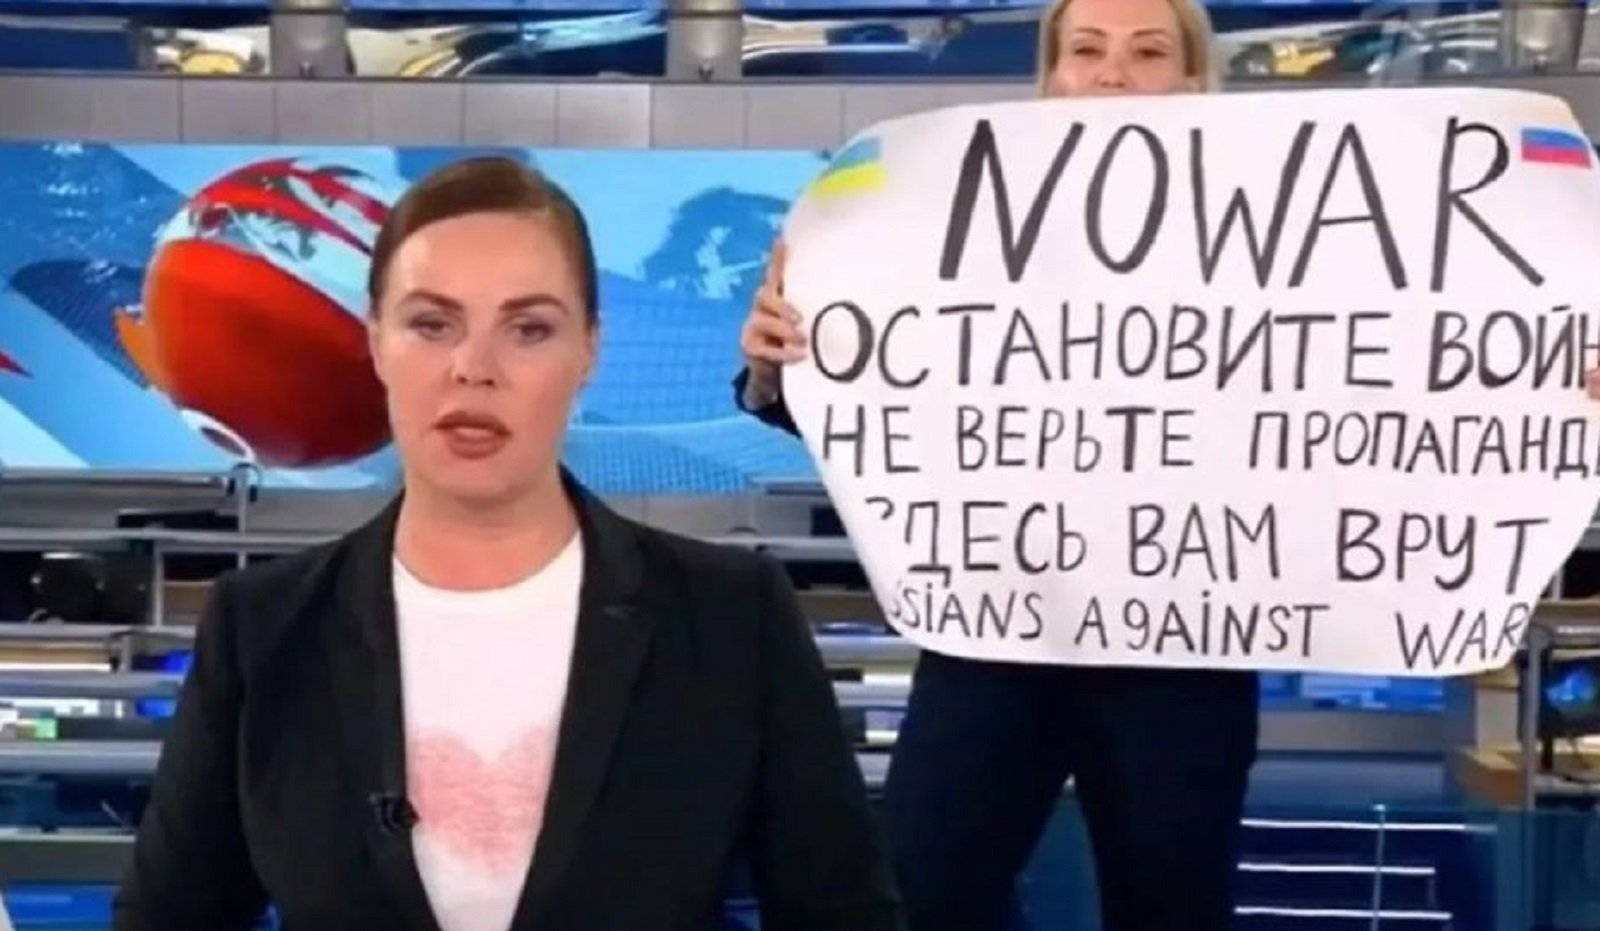 Detinguda el cap de setmana Marina Ovsiànnikova, la periodista russa que combat Putin